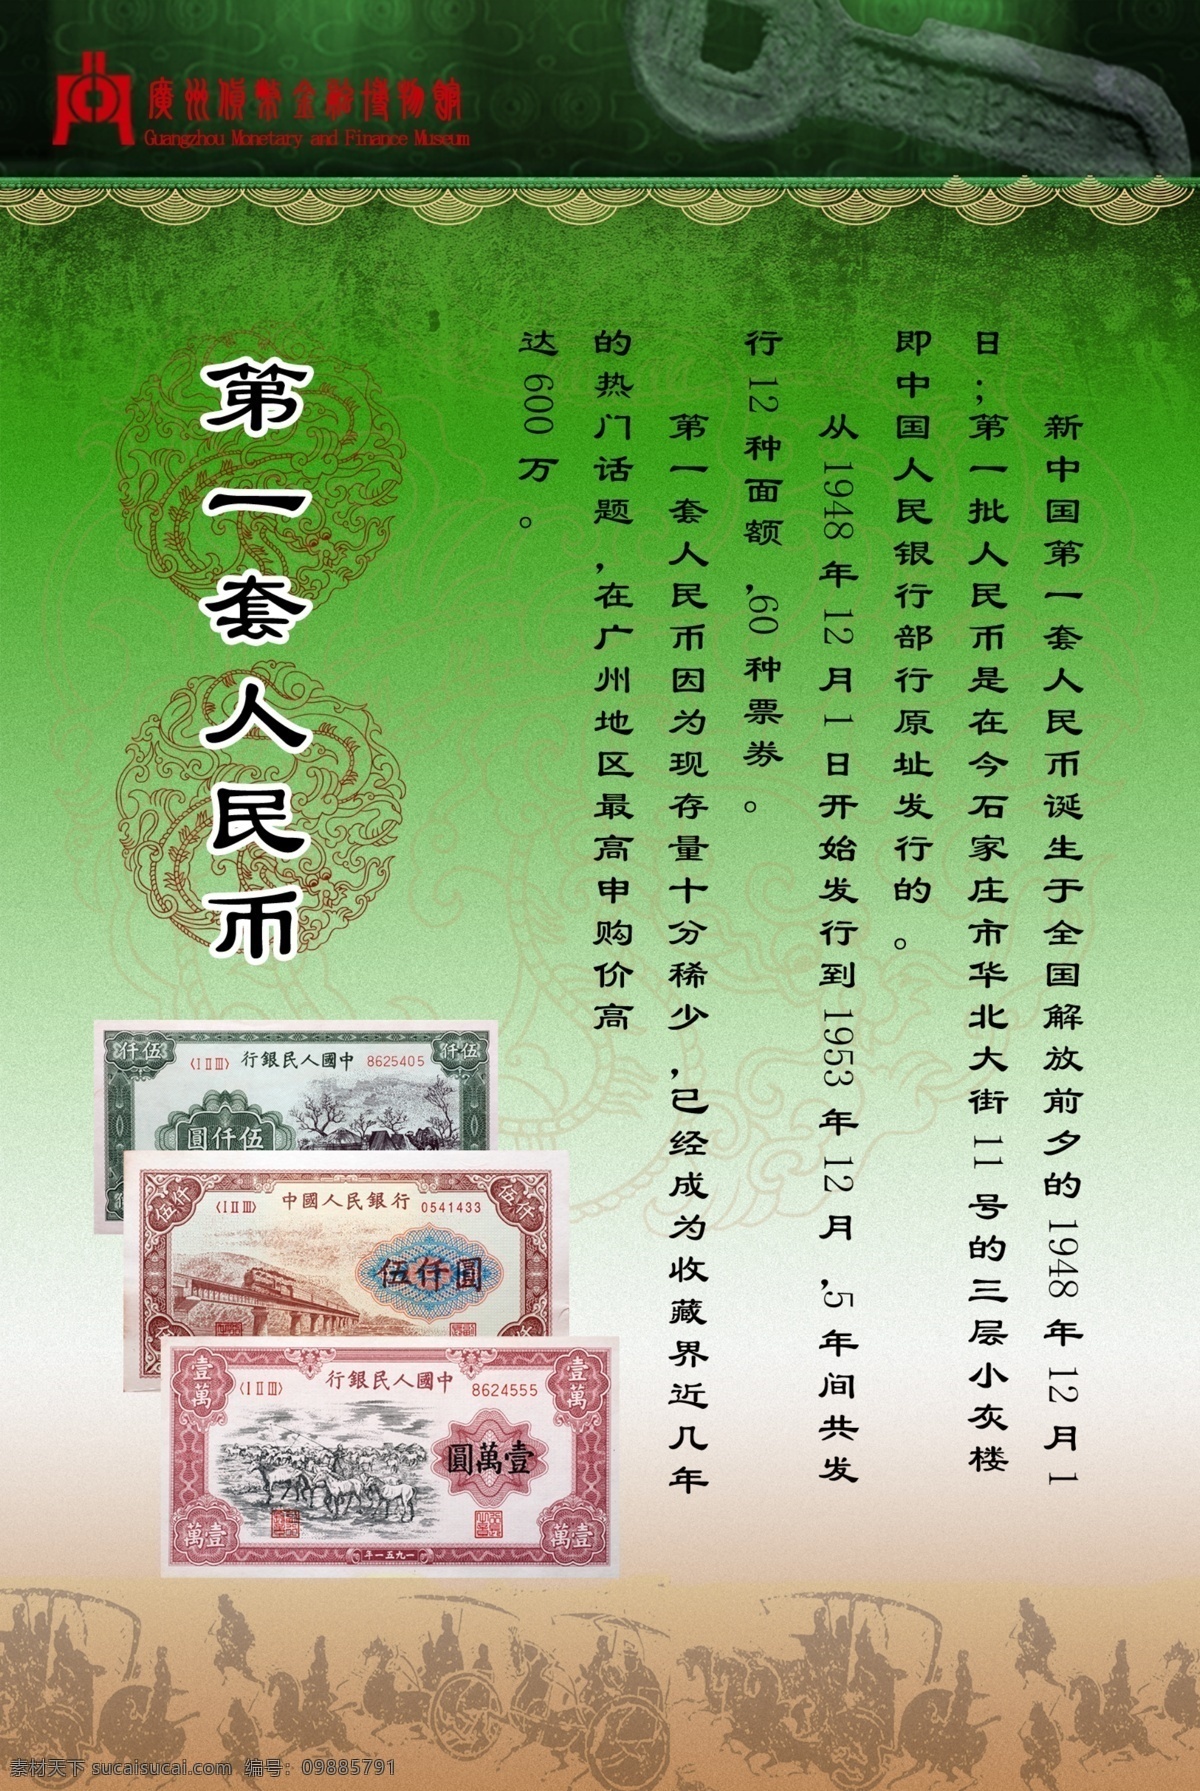 博物馆 藏品 宣传海报 第一套人民币 宣传 海报 喷画 展板模板 广告设计模板 源文件